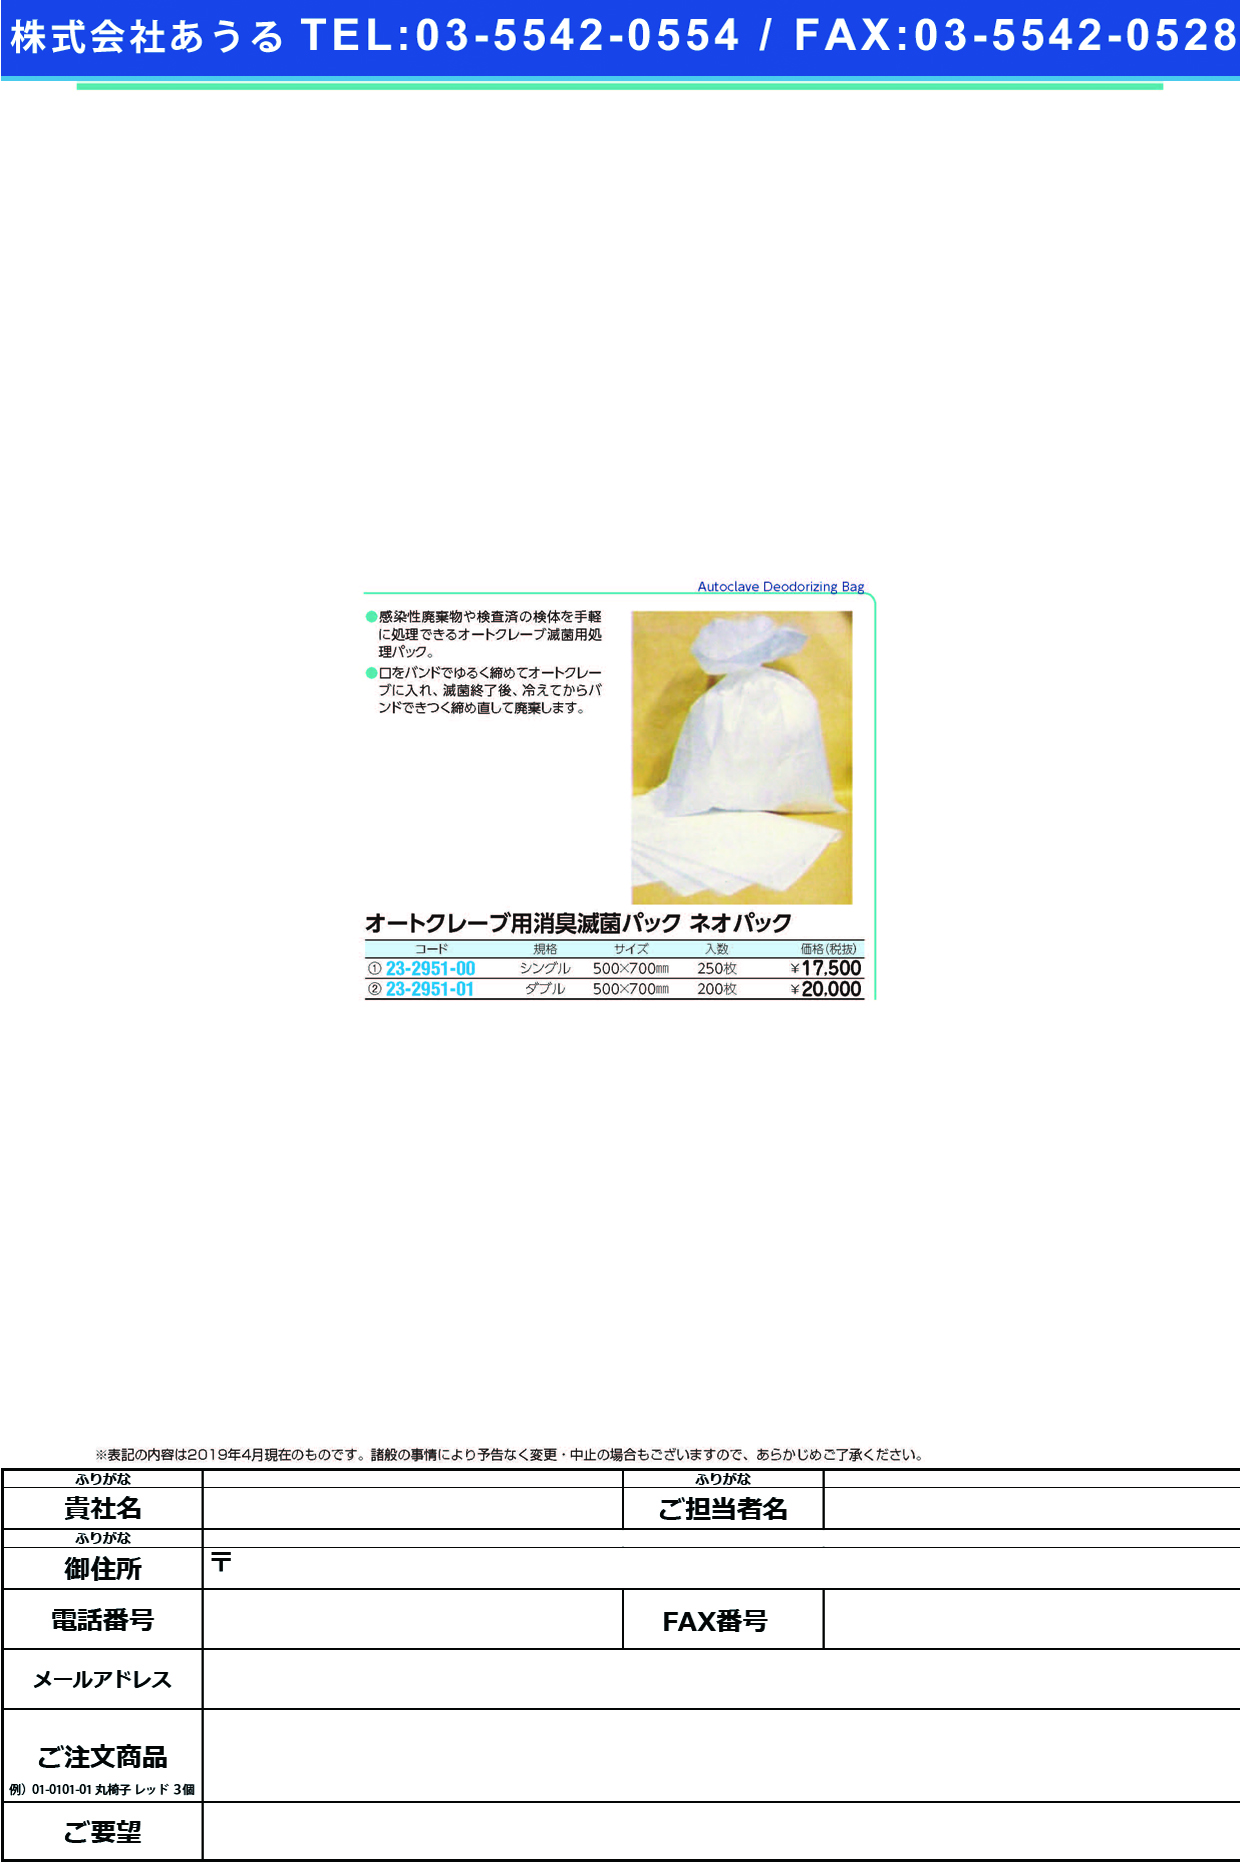 (23-2951-01)ネオパック ﾀﾞﾌﾞﾙ(200ﾏｲ) ﾈｵﾊﾟｯｸ【1箱単位】【2019年カタログ商品】